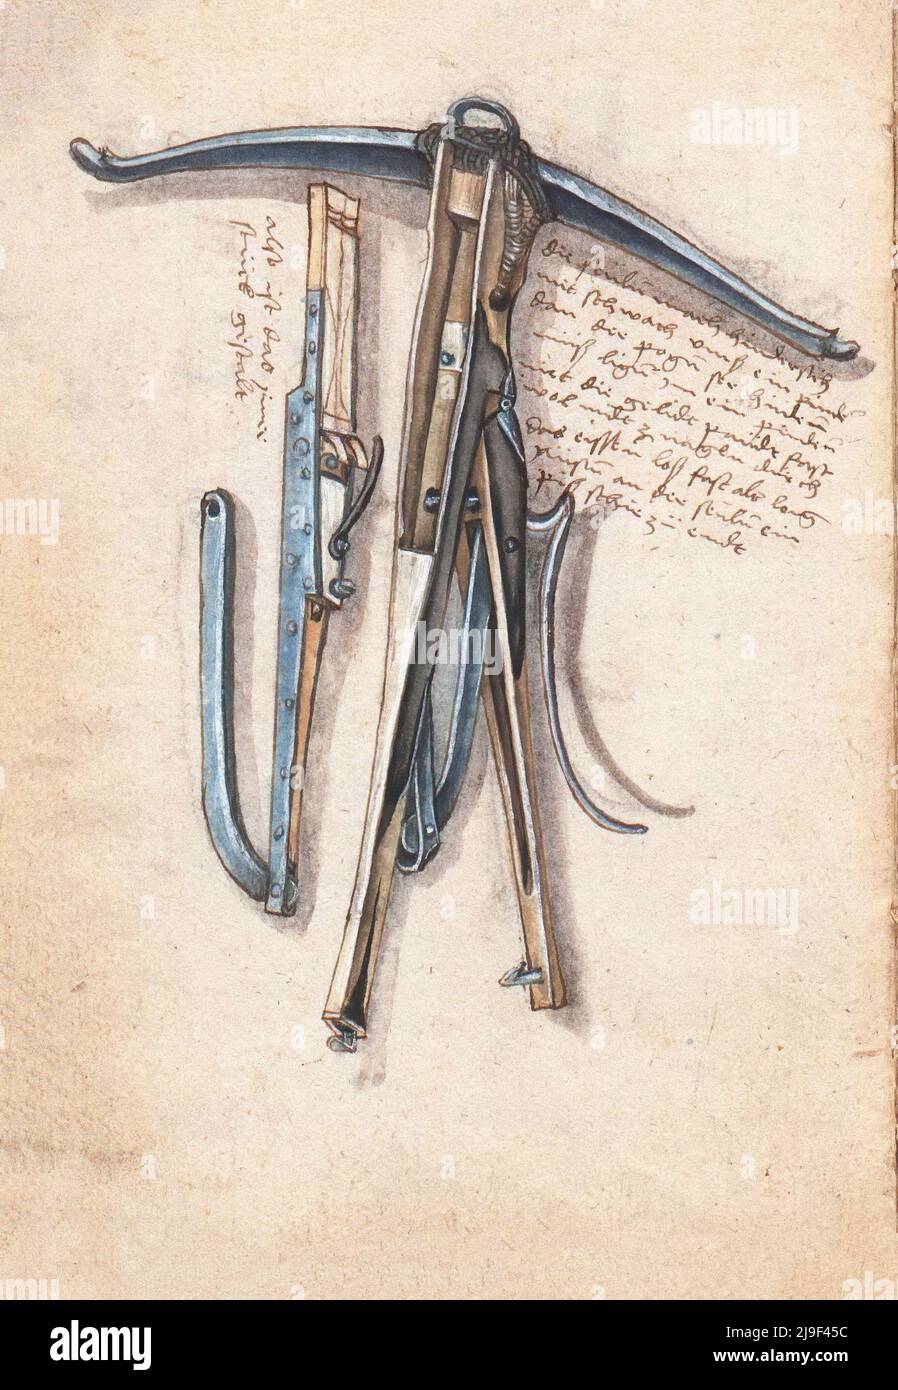 Illustrazione medievale di balestra. Gli strumenti di Martin Löffelholz (1505) Löffelholtz Codex. Illustrazioni e descrizioni di tutti i tipi di attrezzi manuali, Foto Stock